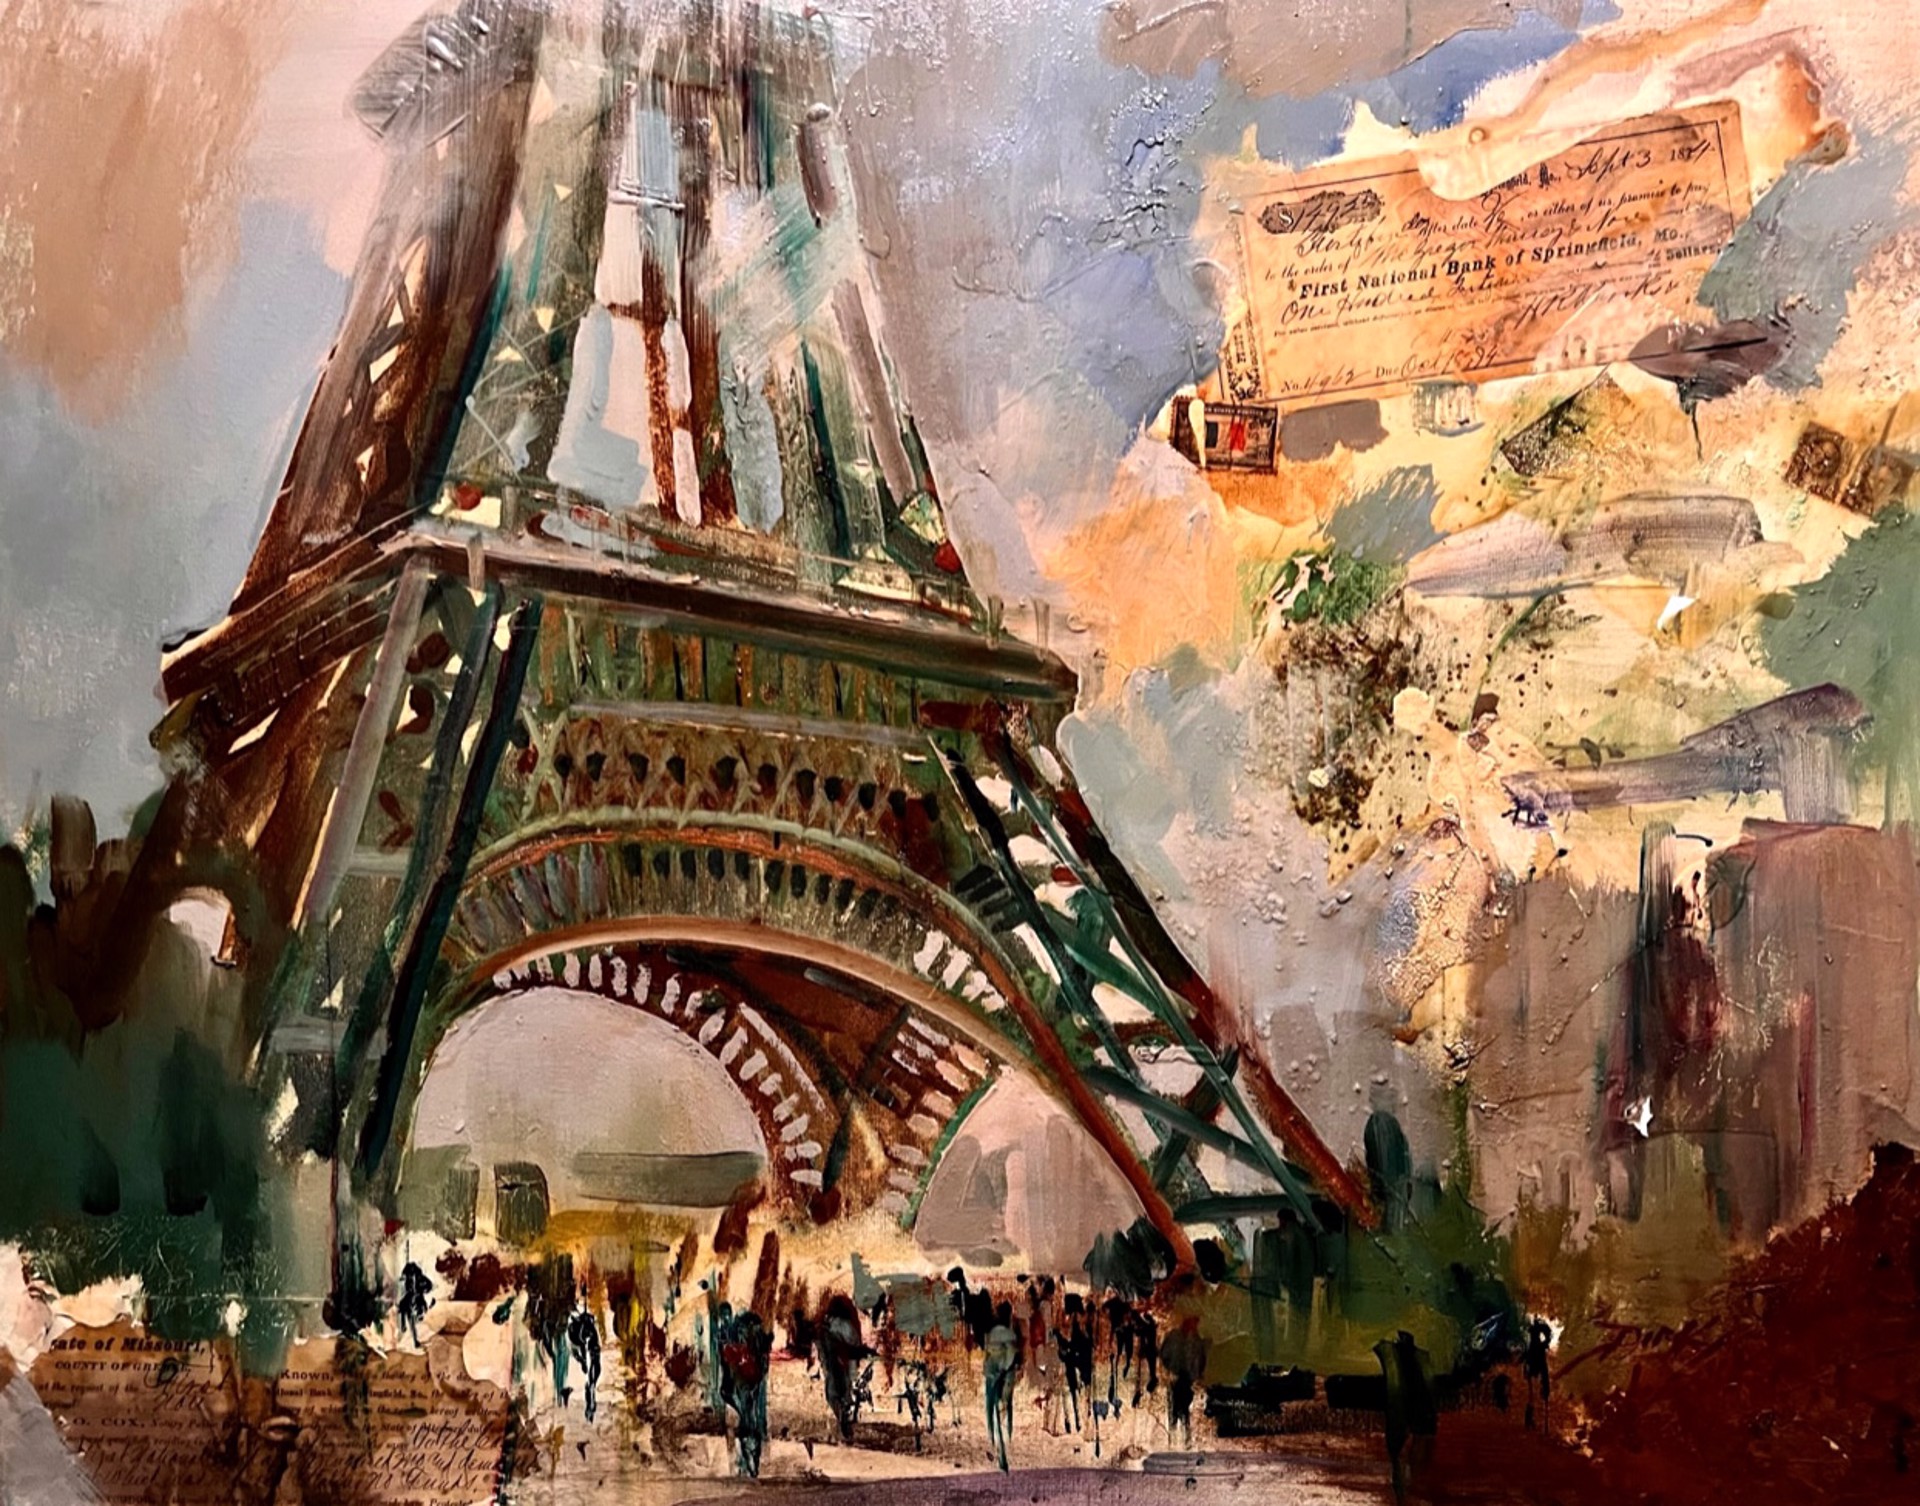 Memories of Paris by Dirk Walker